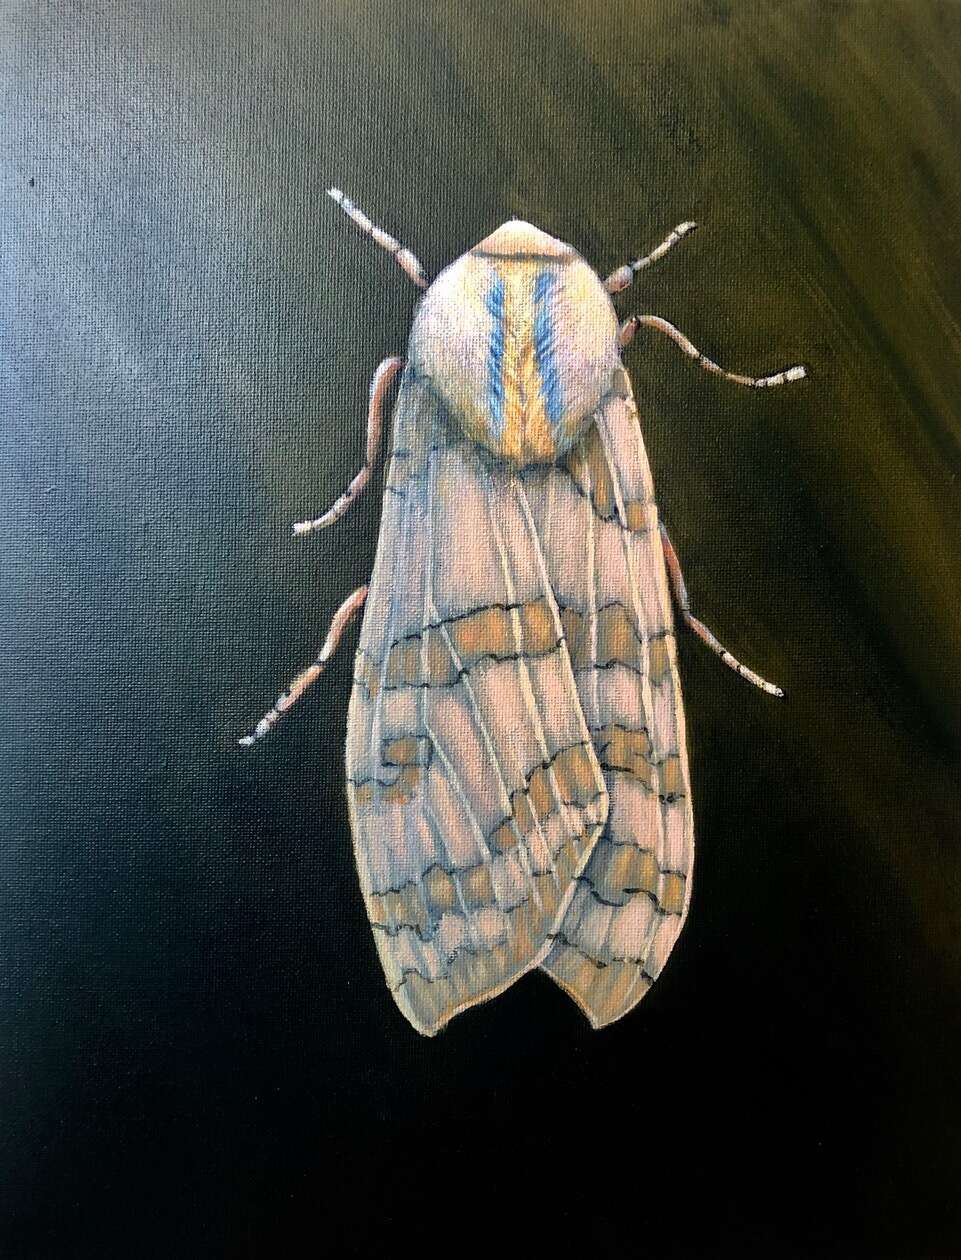  Banded Tussock Moth, Acrylic 13 X 11